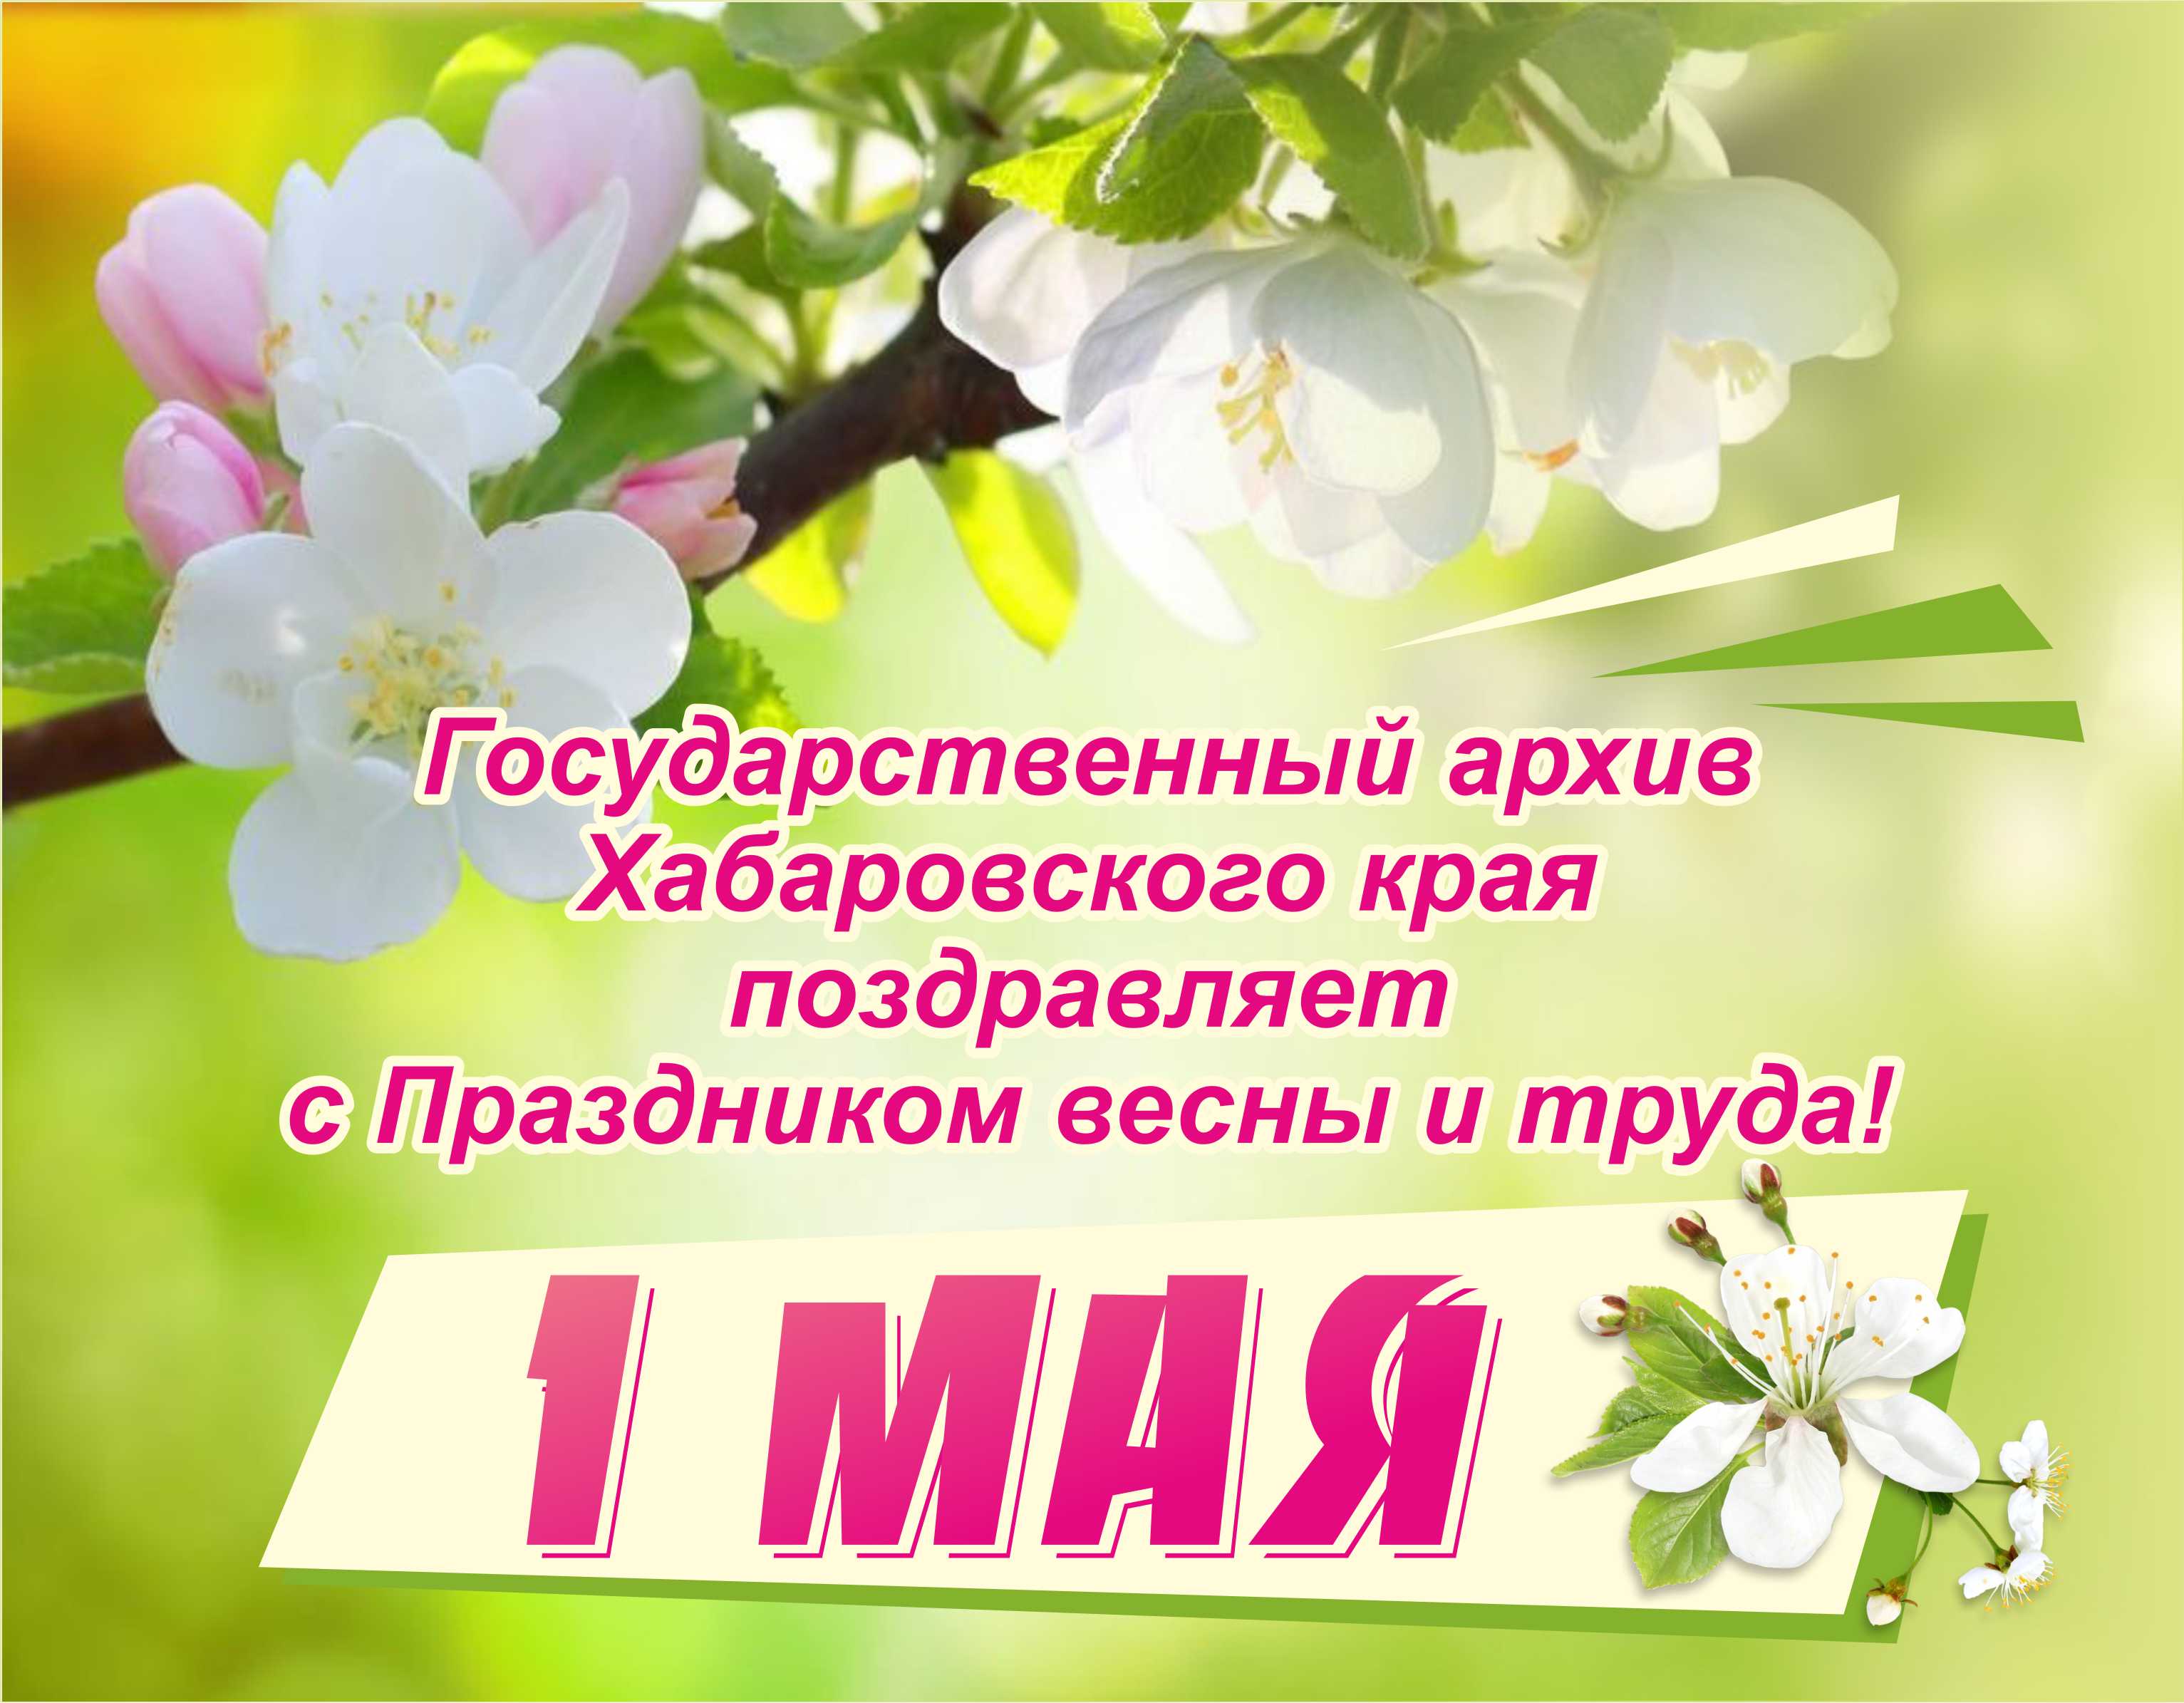 1 мая праздник весны картинки. Поздравление с 1 мая. Первомай праздник весны и труда. Открытка 1 мая праздник весны и труда.